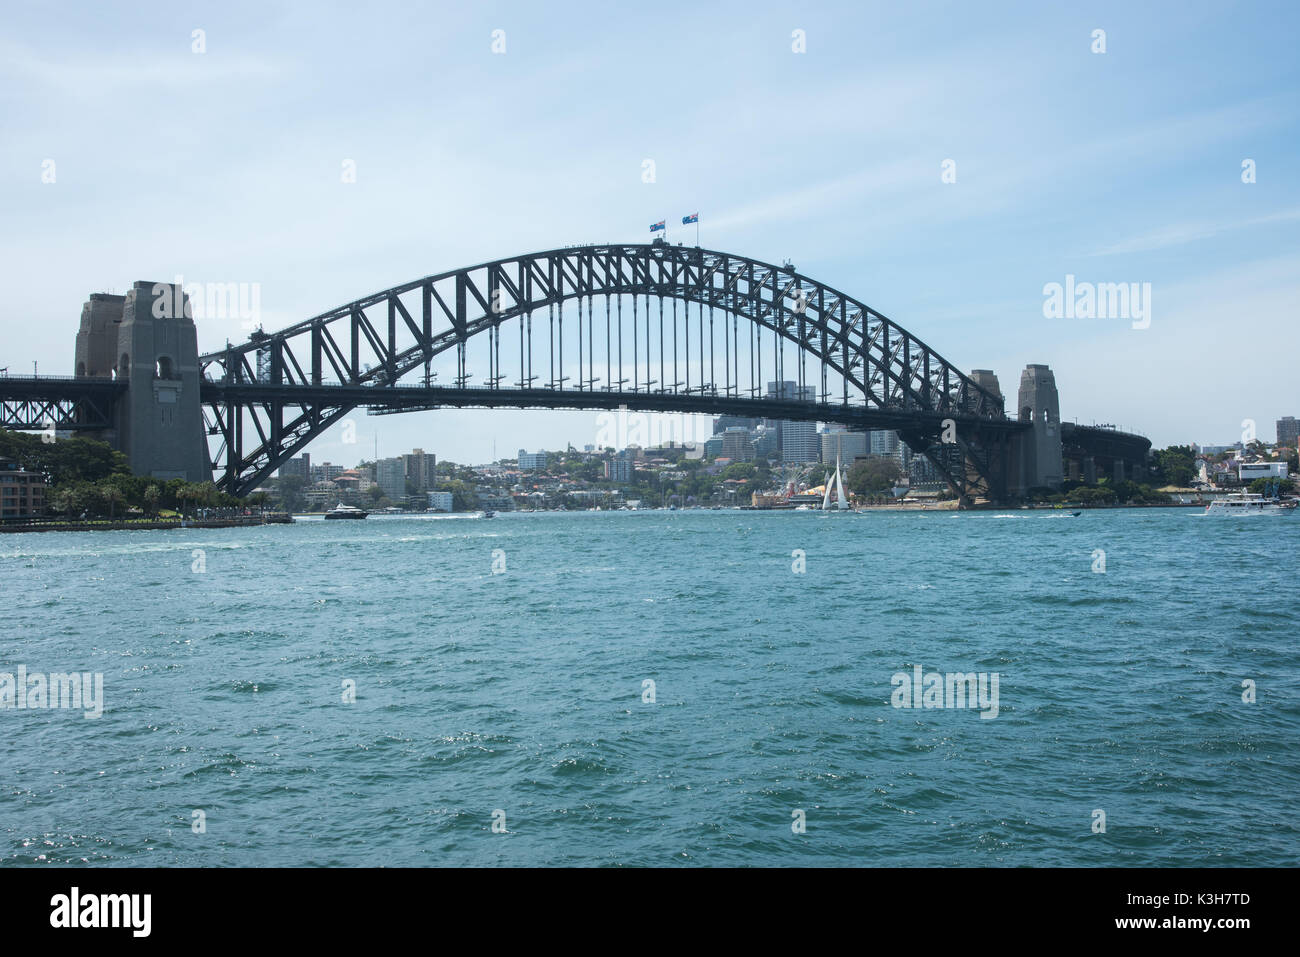 SYDNEY, NSW, Australia de noviembre 20,2016: Sydney Harbour Bridge con embarcaciones náuticas, Luna Park y el waterfront arquitectura en Sydney, Australia Foto de stock